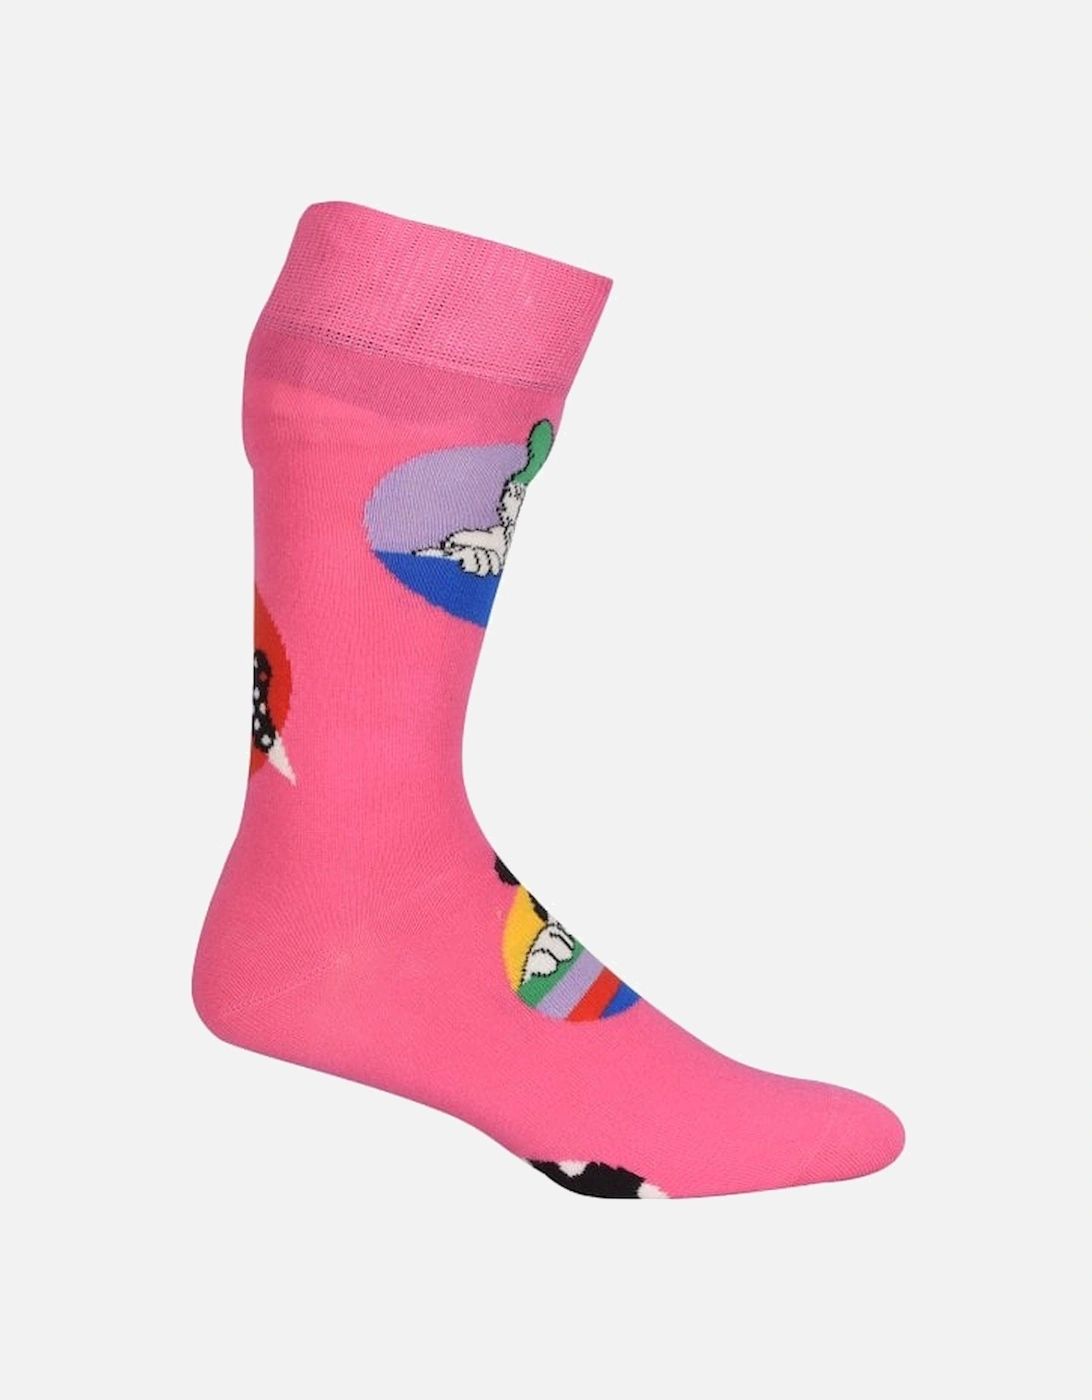 Daisy & Minnie Dot Disney Socks, Pink